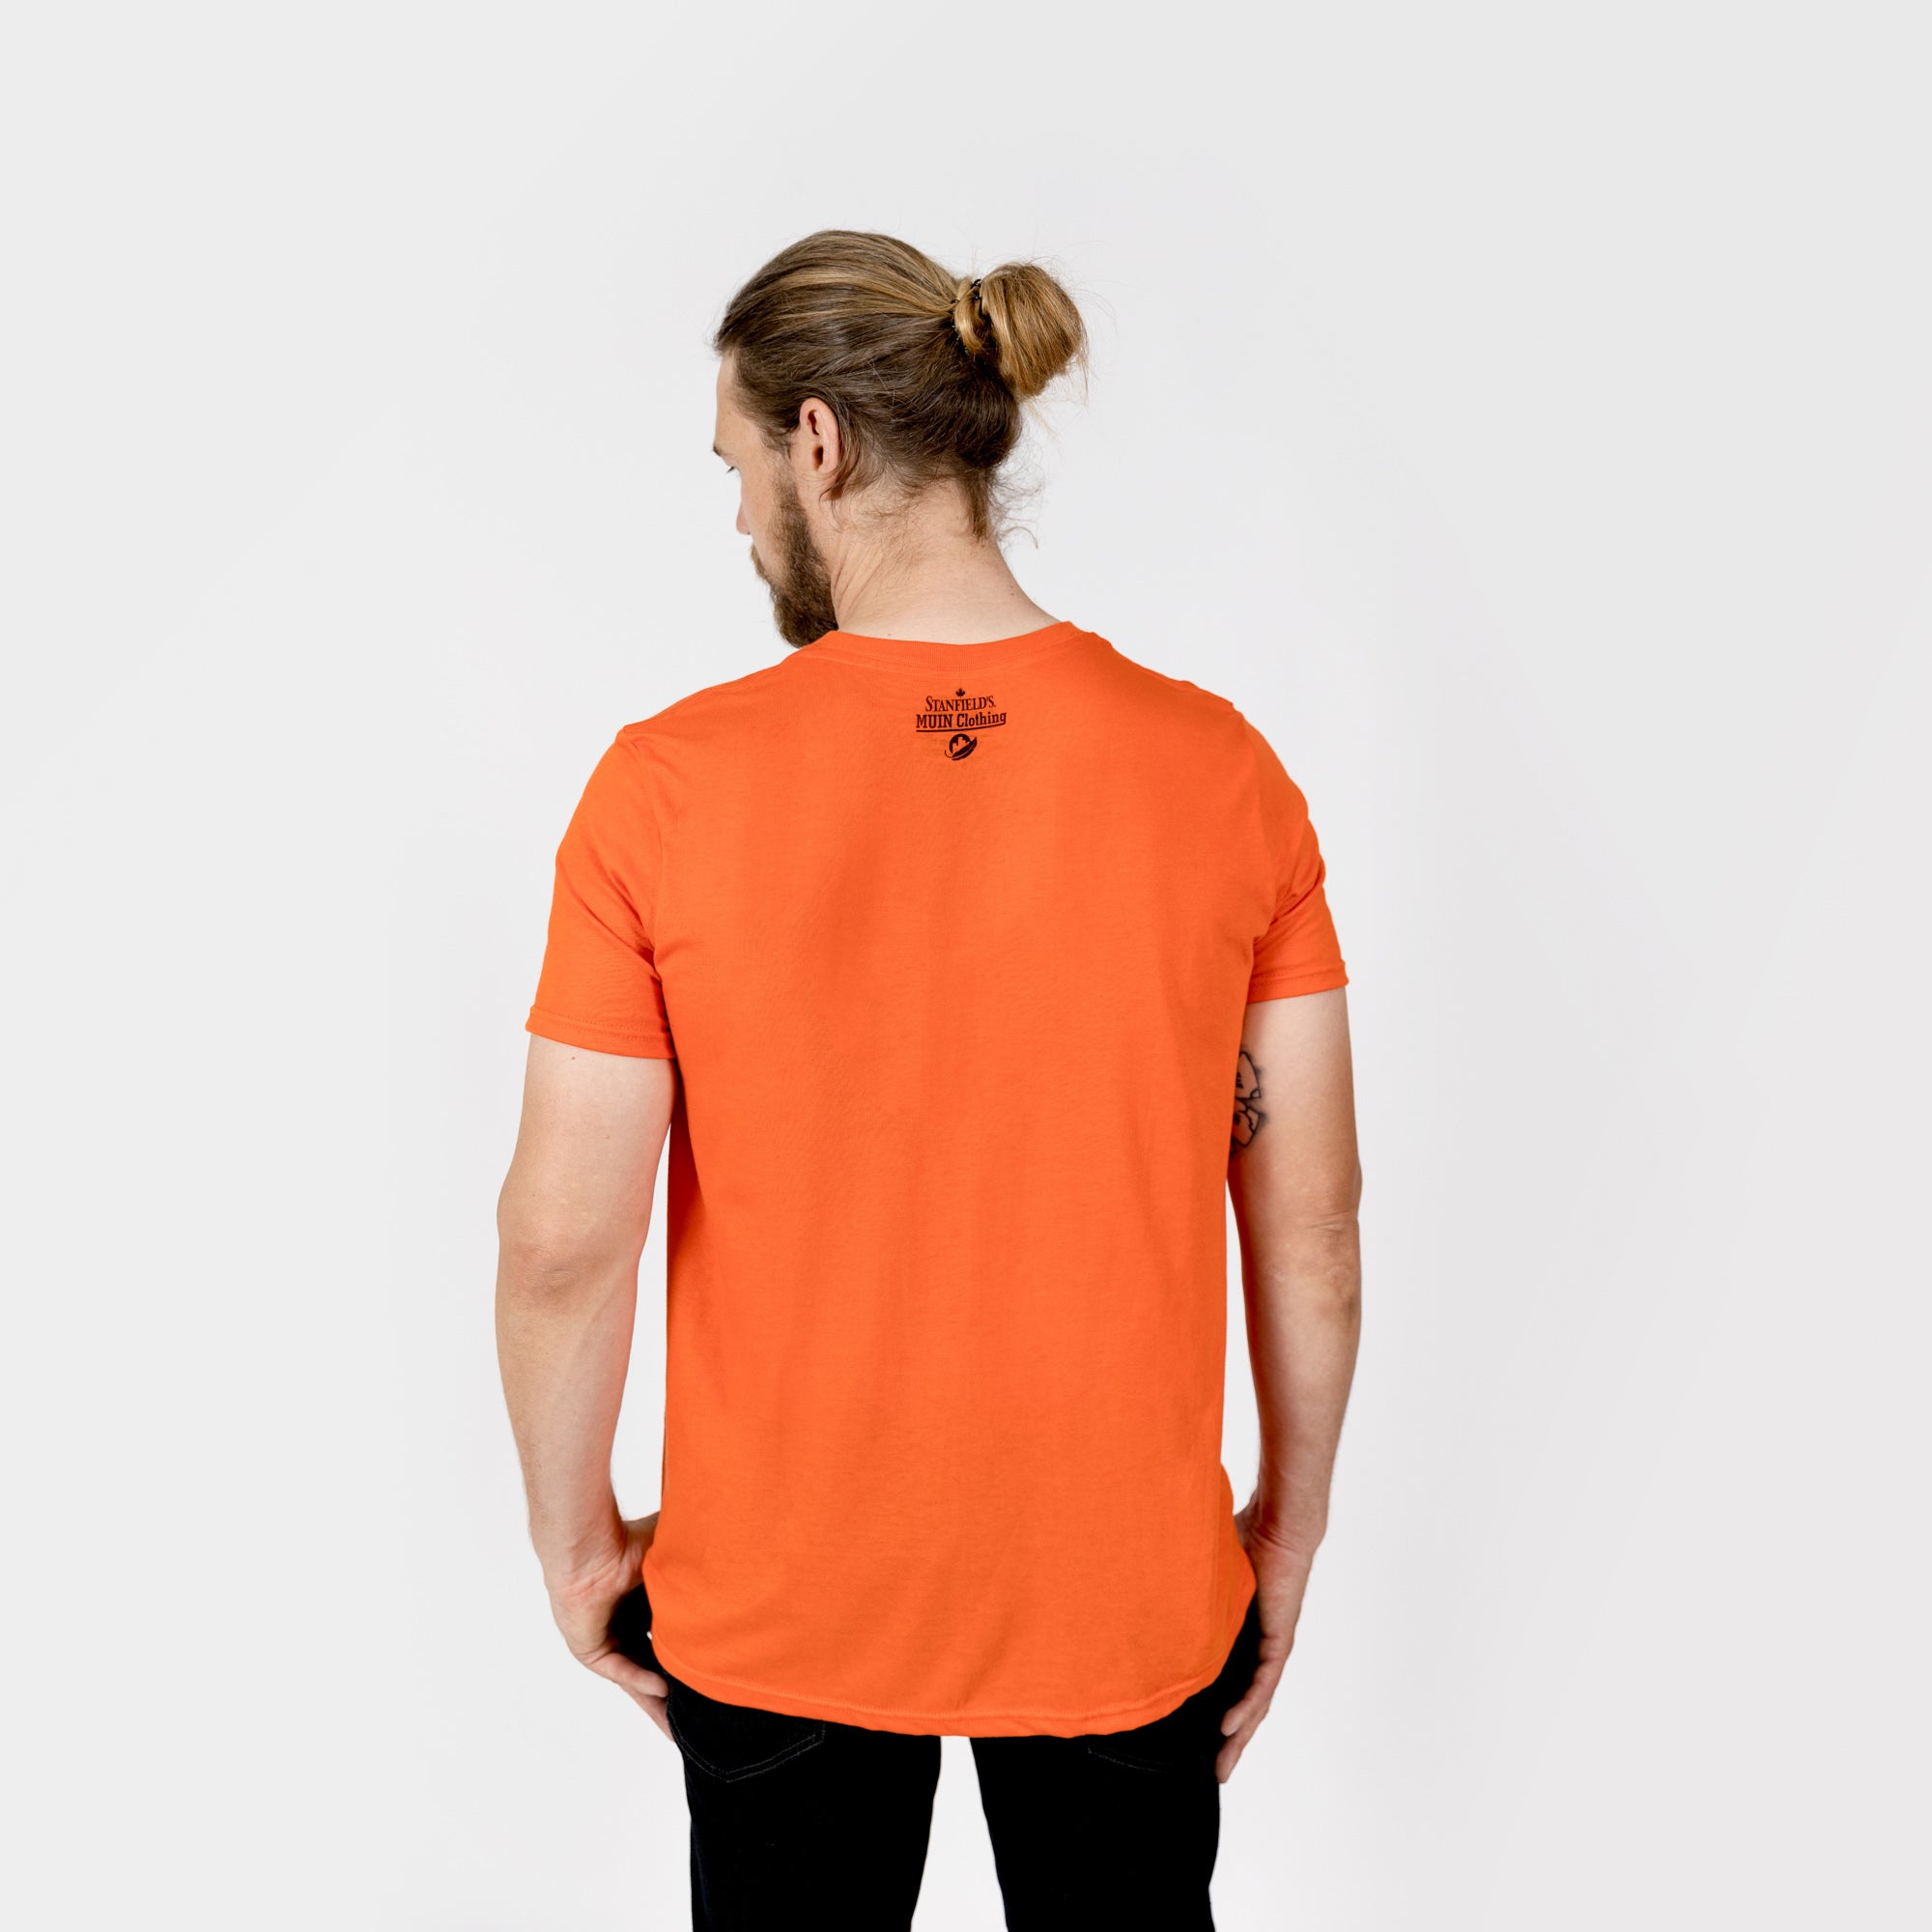 T-shirt orange adulte de Muin X Stanfield - CHAQUE ENFANT COMPTE "PLUMES"